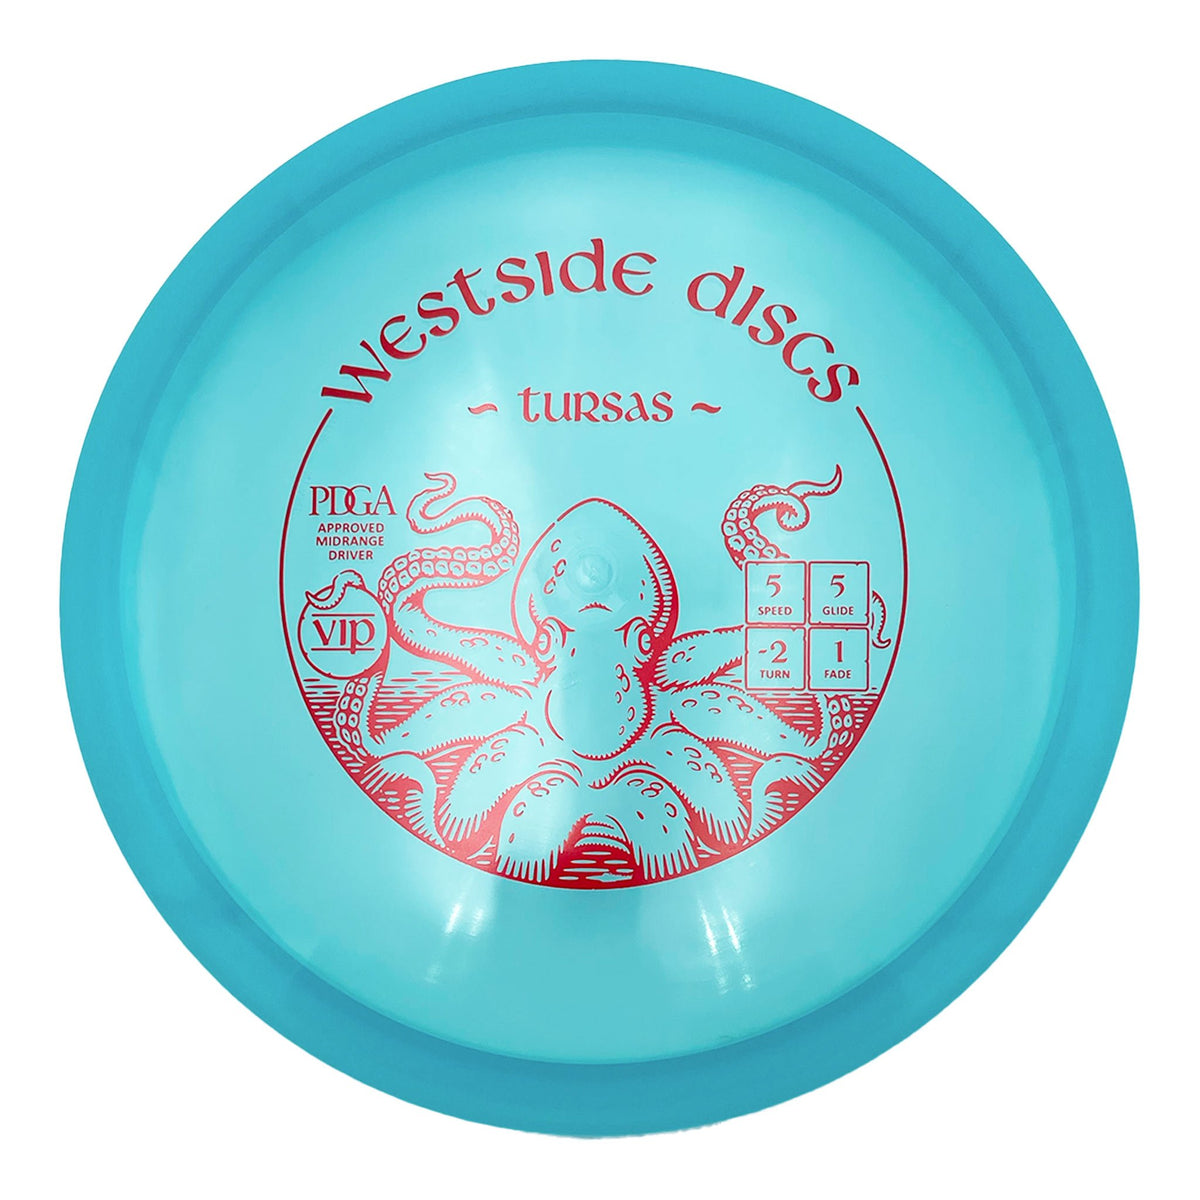 Westside Discs VIP Tursas midrange - Blue